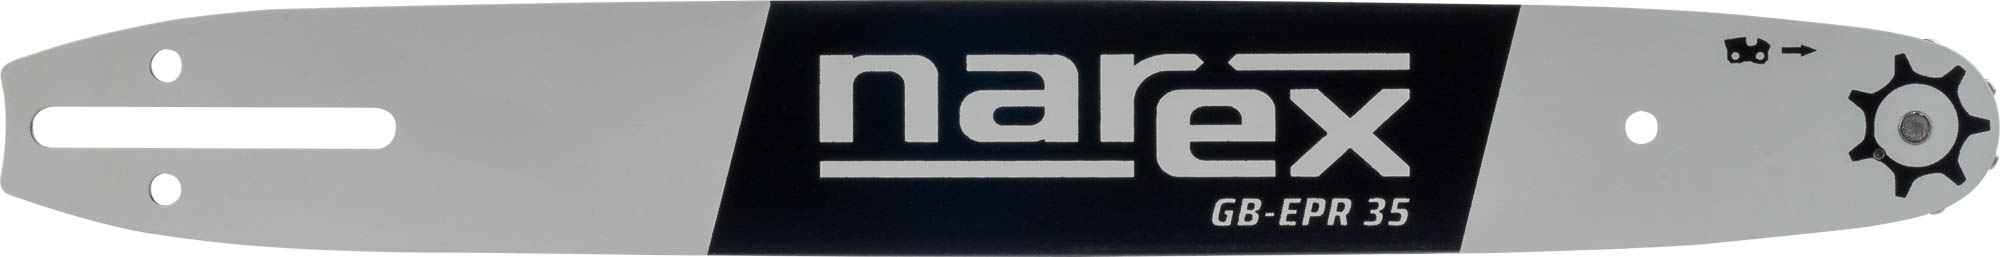 NAREX GB-EPR 35 vodicí lišta